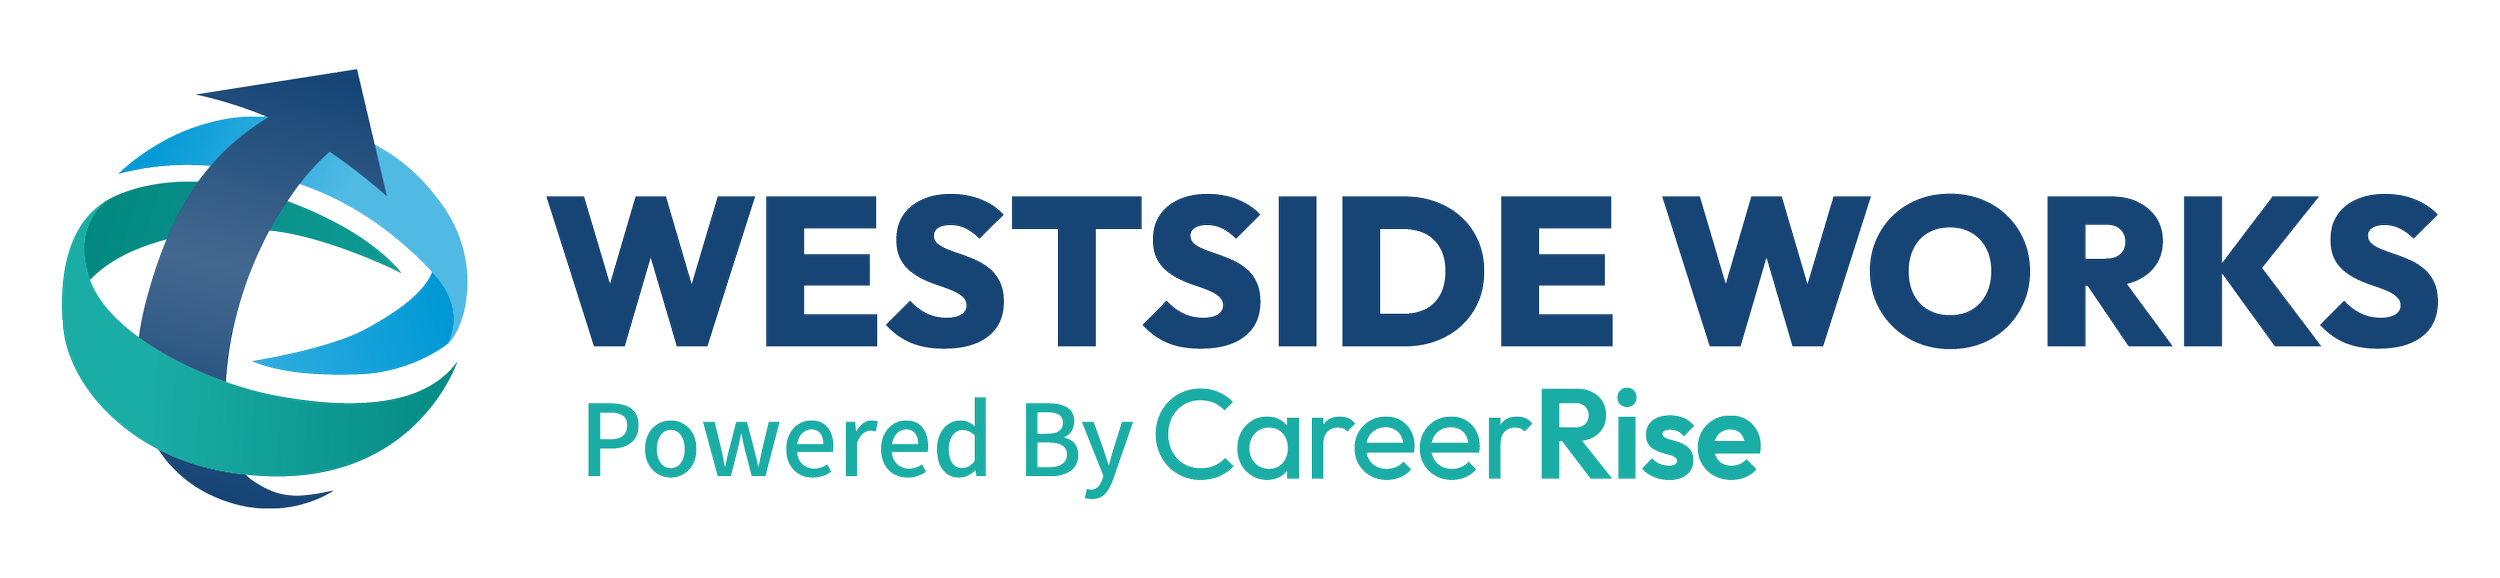 Westside Works Logo.png